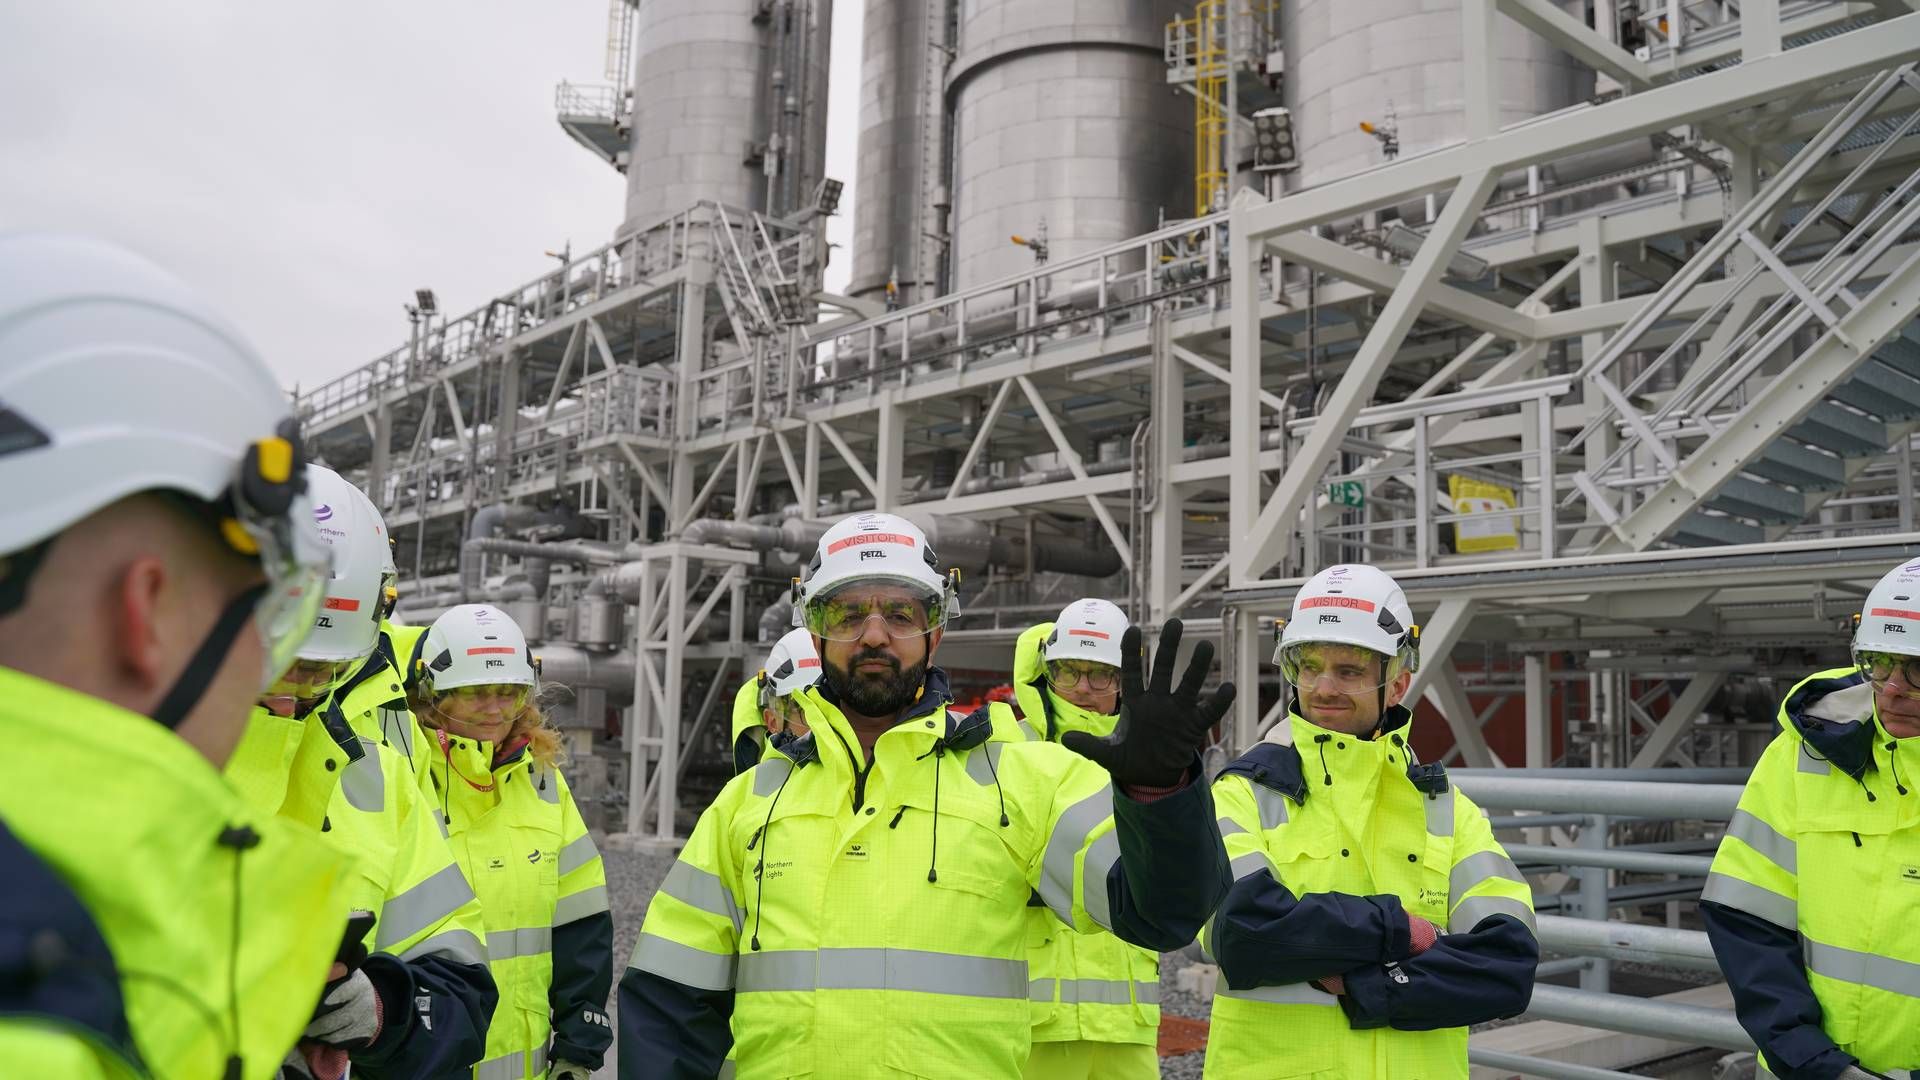 Imran Abdul-Majid er teknisk leder af Northern Lights-projektet, som er bygget utenfor Bergen. Han viste EnergiWatch rundt på stedet, hvor der i de kommende år skal lagres opp mot fem millioner tonn CO2 i året. | Foto: Laura Kold